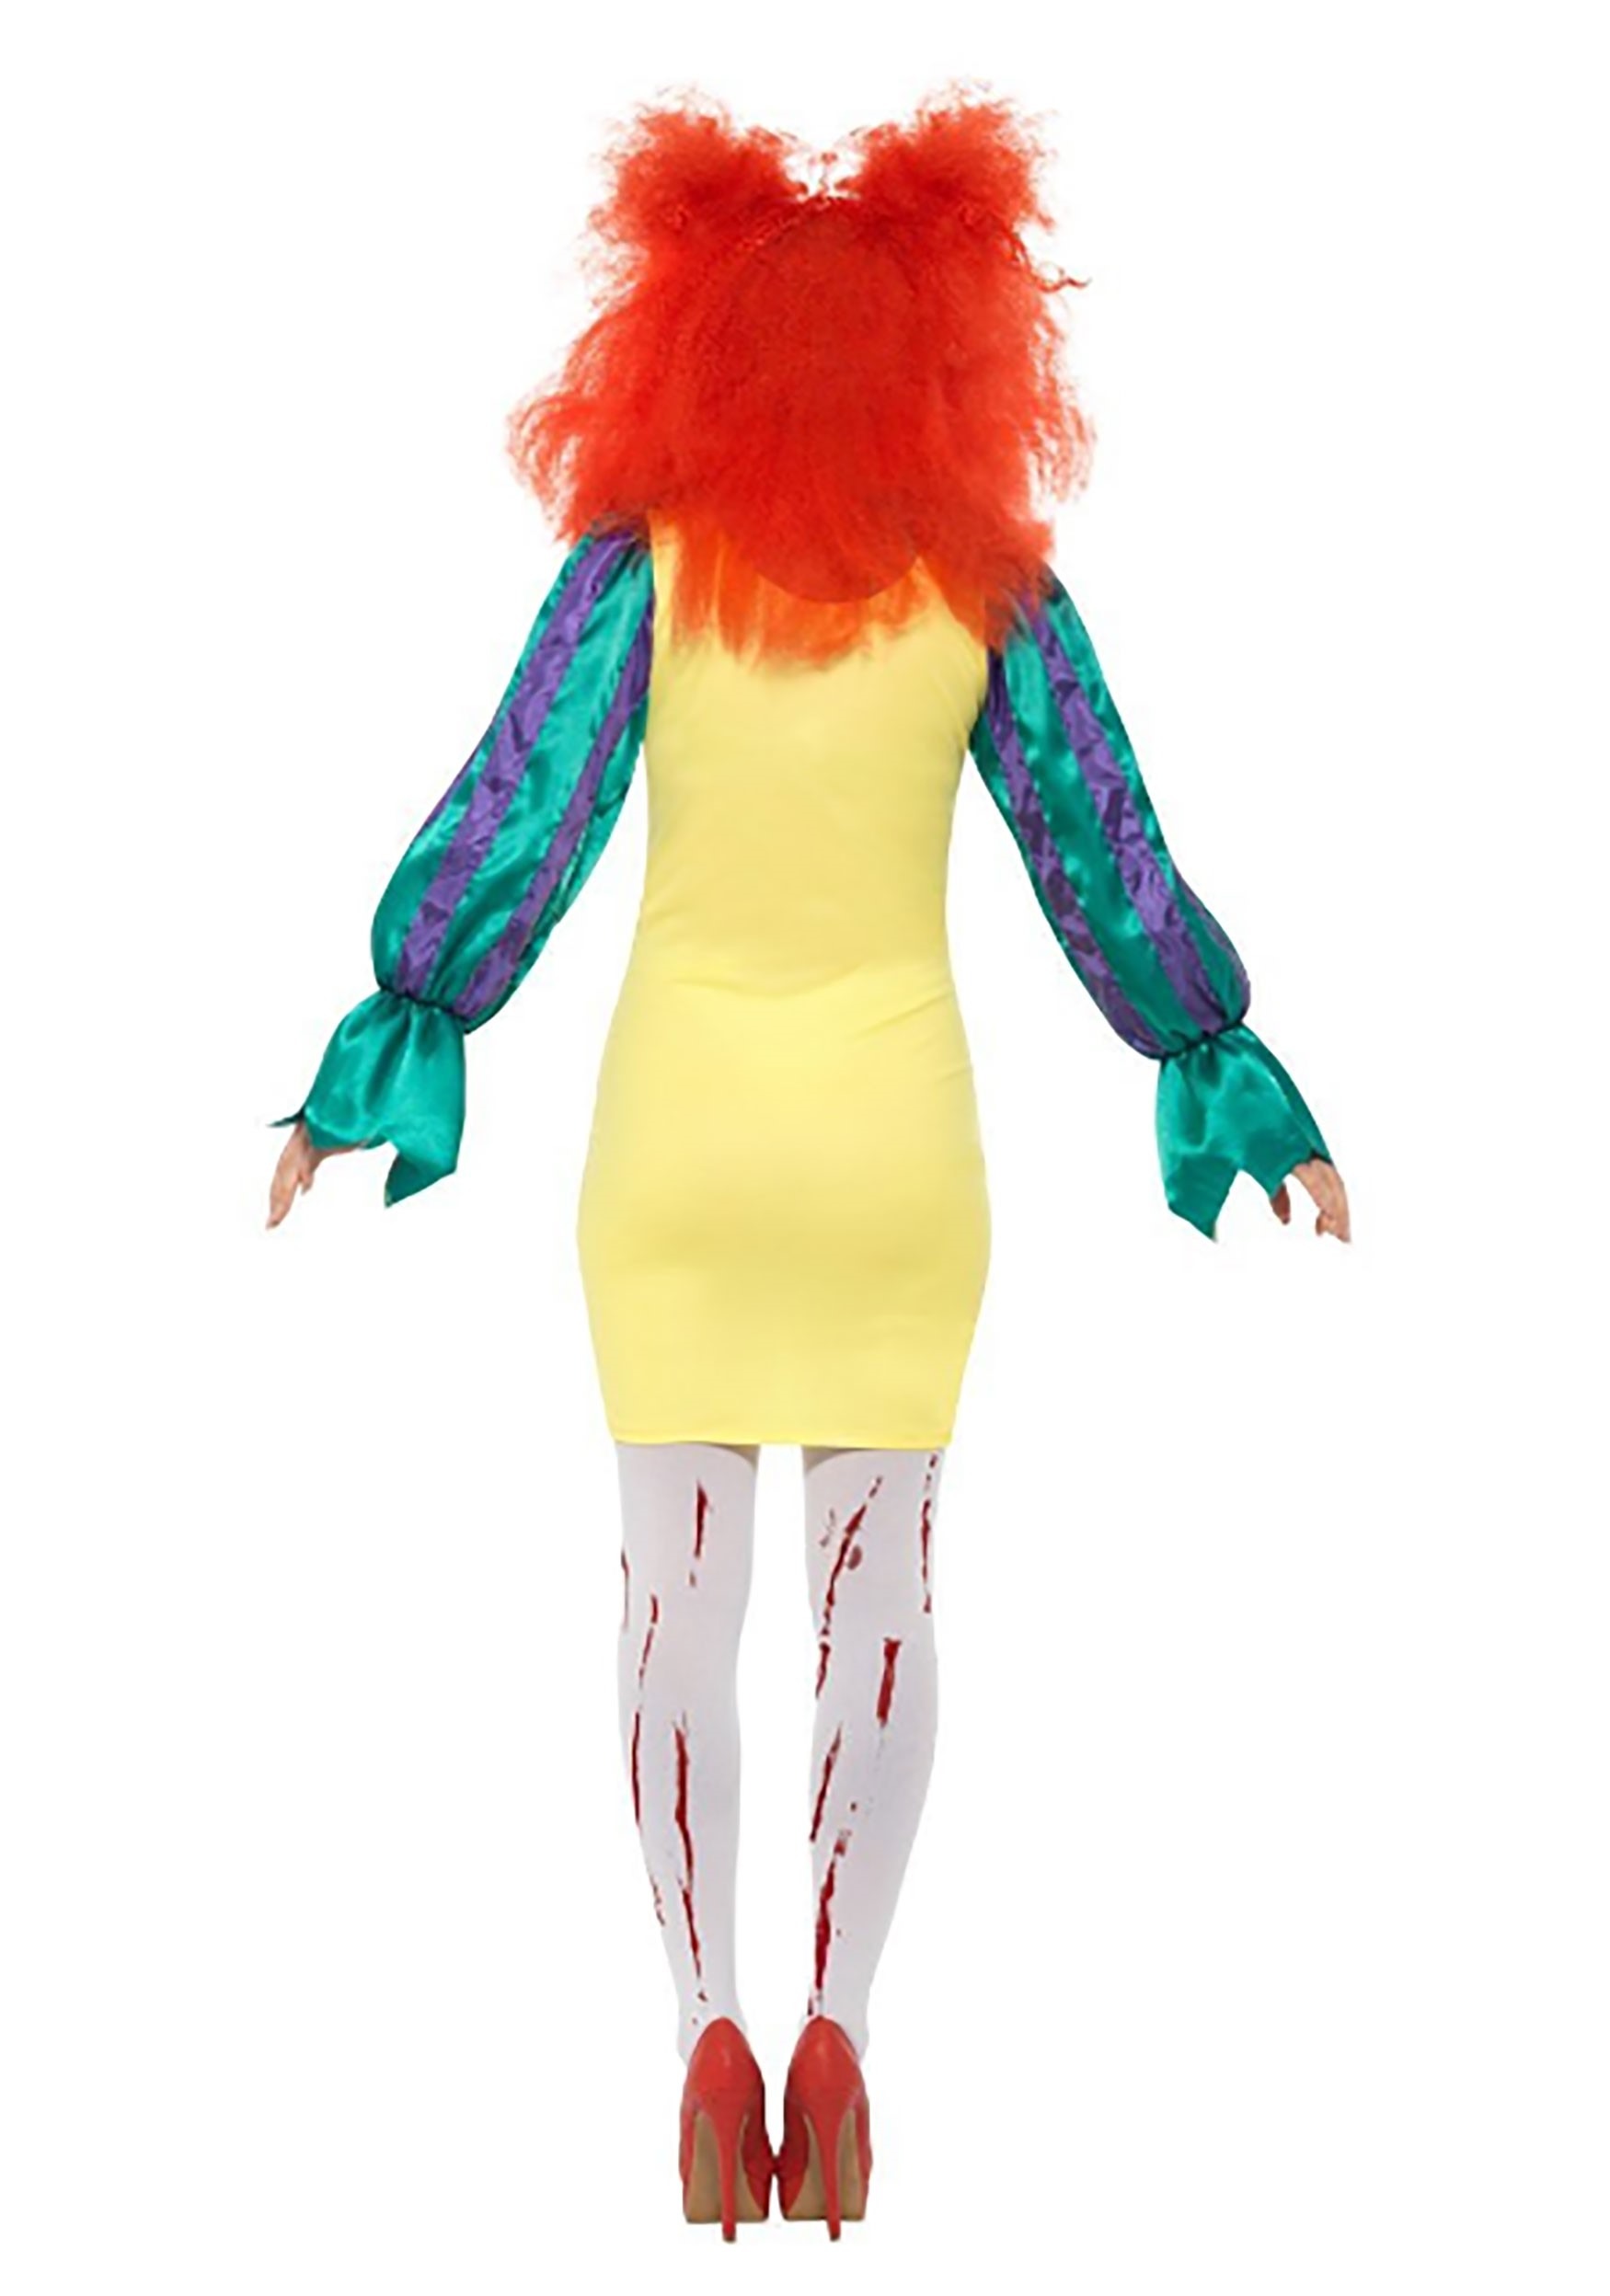 Classic Horror Clown Women's Fancy Dress Costume